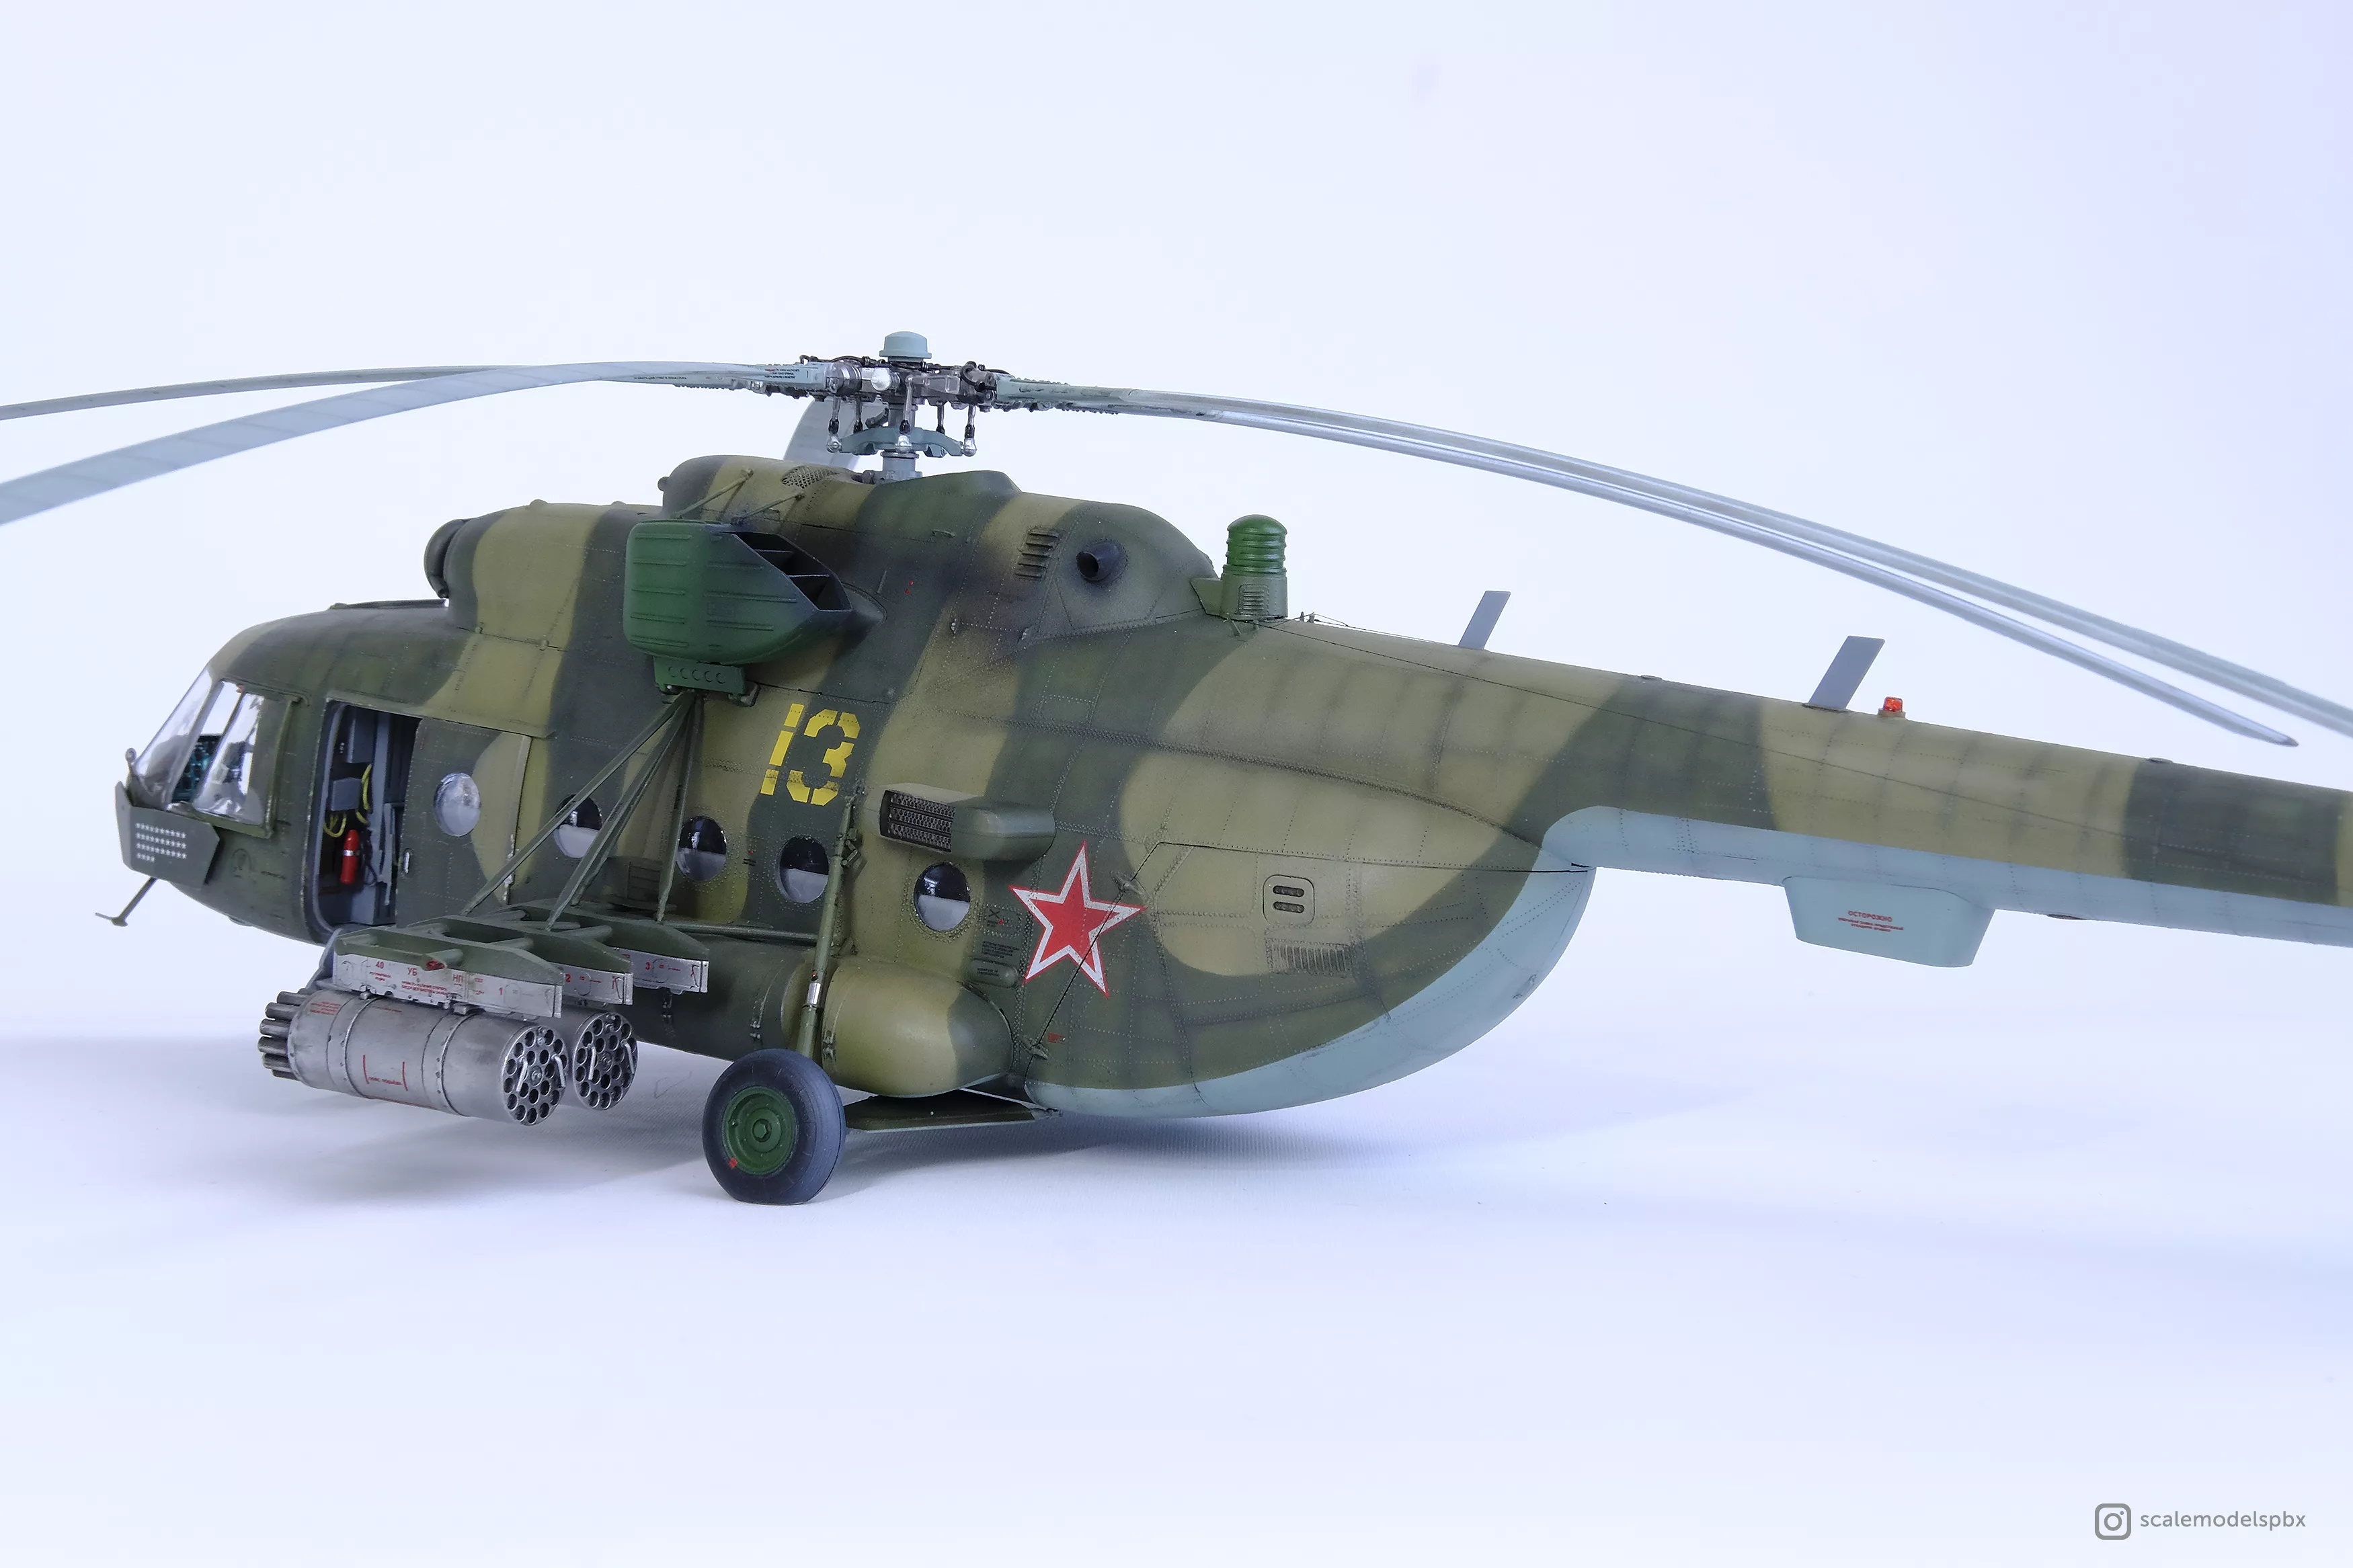 Вертолет МИ-8МТ